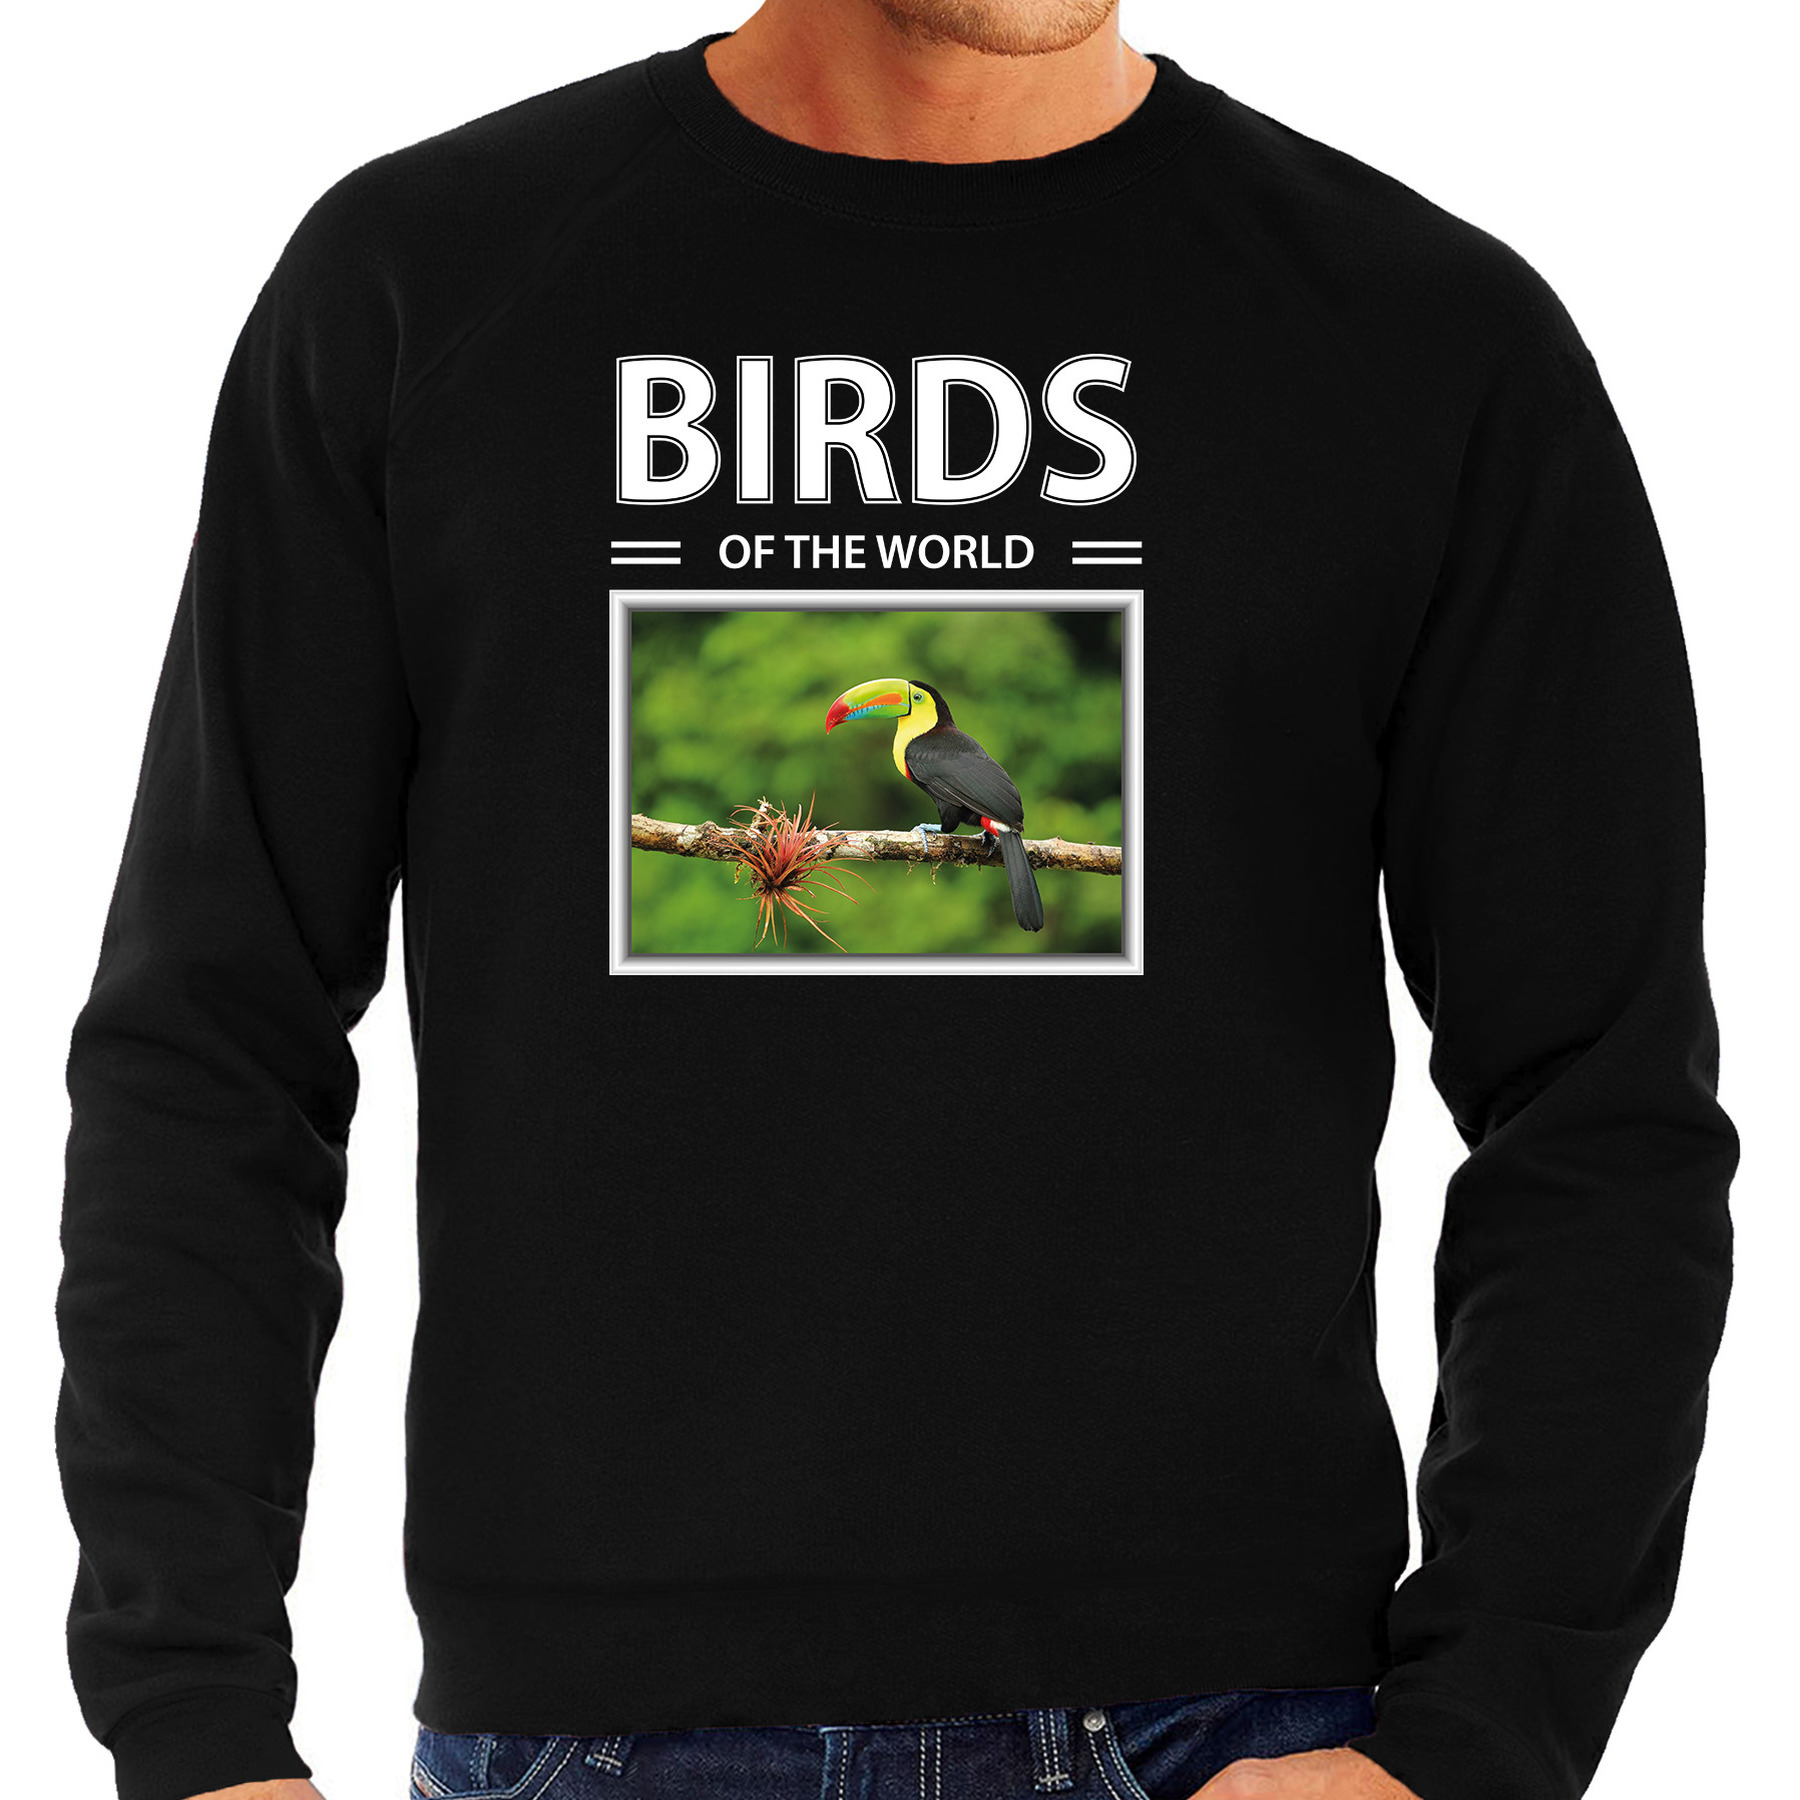 Toekans vogel sweater / trui met dieren foto birds of the world zwart voor heren